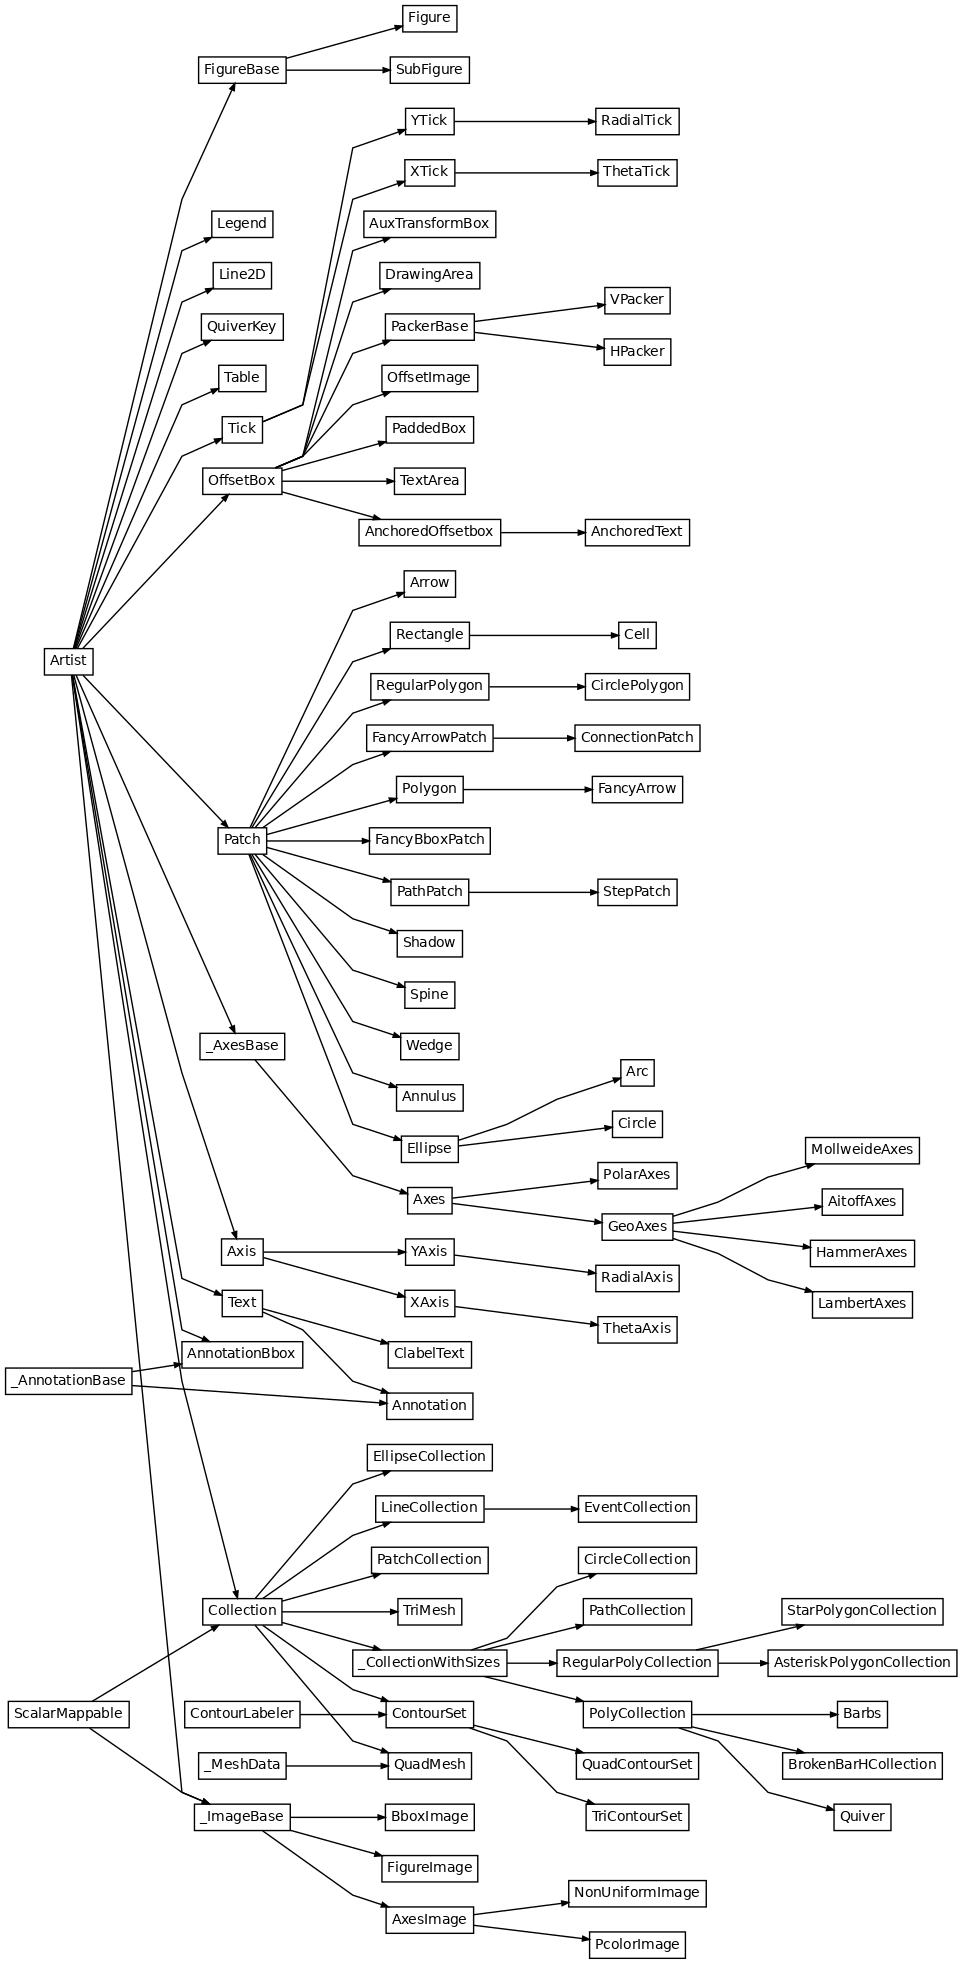 Inheritance diagram of matplotlib.axes._axes.Axes, matplotlib.axes._base._AxesBase, matplotlib.axis.Axis, matplotlib.axis.Tick, matplotlib.axis.XAxis, matplotlib.axis.XTick, matplotlib.axis.YAxis, matplotlib.axis.YTick, matplotlib.collections.AsteriskPolygonCollection, matplotlib.collections.BrokenBarHCollection, matplotlib.collections.CircleCollection, matplotlib.collections.Collection, matplotlib.collections.EllipseCollection, matplotlib.collections.EventCollection, matplotlib.collections.LineCollection, matplotlib.collections.PatchCollection, matplotlib.collections.PathCollection, matplotlib.collections.PolyCollection, matplotlib.collections.QuadMesh, matplotlib.collections.RegularPolyCollection, matplotlib.collections.StarPolygonCollection, matplotlib.collections.TriMesh, matplotlib.collections._CollectionWithSizes, matplotlib.contour.ClabelText, matplotlib.contour.ContourSet, matplotlib.contour.QuadContourSet, matplotlib.figure.FigureBase, matplotlib.figure.Figure, matplotlib.figure.SubFigure, matplotlib.image.AxesImage, matplotlib.image.BboxImage, matplotlib.image.FigureImage, matplotlib.image.NonUniformImage, matplotlib.image.PcolorImage, matplotlib.image._ImageBase, matplotlib.legend.Legend, matplotlib.lines.Line2D, matplotlib.offsetbox.AnchoredOffsetbox, matplotlib.offsetbox.AnchoredText, matplotlib.offsetbox.AnnotationBbox, matplotlib.offsetbox.AuxTransformBox, matplotlib.offsetbox.DrawingArea, matplotlib.offsetbox.HPacker, matplotlib.offsetbox.OffsetBox, matplotlib.offsetbox.OffsetImage, matplotlib.offsetbox.PackerBase, matplotlib.offsetbox.PaddedBox, matplotlib.offsetbox.TextArea, matplotlib.offsetbox.VPacker, matplotlib.patches.Annulus, matplotlib.patches.Arc, matplotlib.patches.Arrow, matplotlib.patches.Circle, matplotlib.patches.CirclePolygon, matplotlib.patches.ConnectionPatch, matplotlib.patches.Ellipse, matplotlib.patches.FancyArrow, matplotlib.patches.FancyArrowPatch, matplotlib.patches.FancyBboxPatch, matplotlib.patches.Patch, matplotlib.patches.PathPatch, matplotlib.patches.Polygon, matplotlib.patches.Rectangle, matplotlib.patches.RegularPolygon, matplotlib.patches.Shadow, matplotlib.patches.StepPatch, matplotlib.patches.Wedge, matplotlib.projections.geo.AitoffAxes, matplotlib.projections.geo.GeoAxes, matplotlib.projections.geo.HammerAxes, matplotlib.projections.geo.LambertAxes, matplotlib.projections.geo.MollweideAxes, matplotlib.projections.polar.PolarAxes, matplotlib.projections.polar.RadialAxis, matplotlib.projections.polar.RadialTick, matplotlib.projections.polar.ThetaAxis, matplotlib.projections.polar.ThetaTick, matplotlib.quiver.Barbs, matplotlib.quiver.Quiver, matplotlib.quiver.QuiverKey, matplotlib.spines.Spine, matplotlib.table.Cell, matplotlib.table.Table, matplotlib.text.Annotation, matplotlib.text.Text, matplotlib.tri.TriContourSet